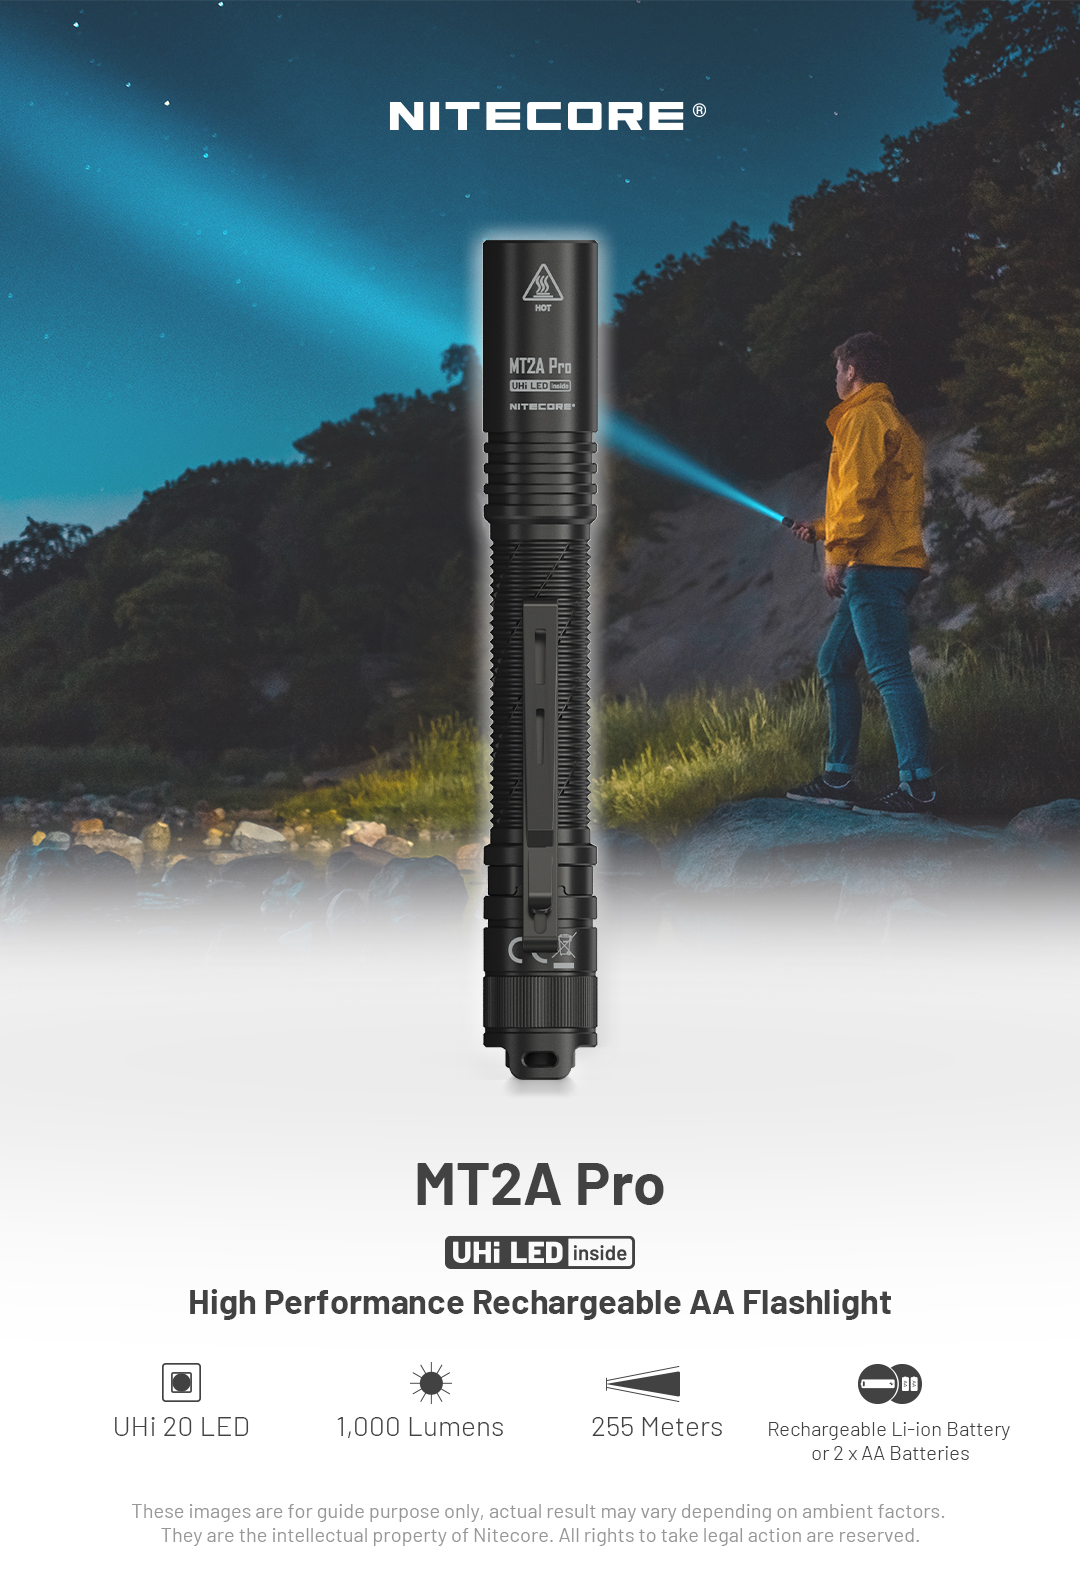 Nitecore, MT2A, linterna de luces ledes de 345 lúmenes con funda premium  incluida, usa dos baterías AA